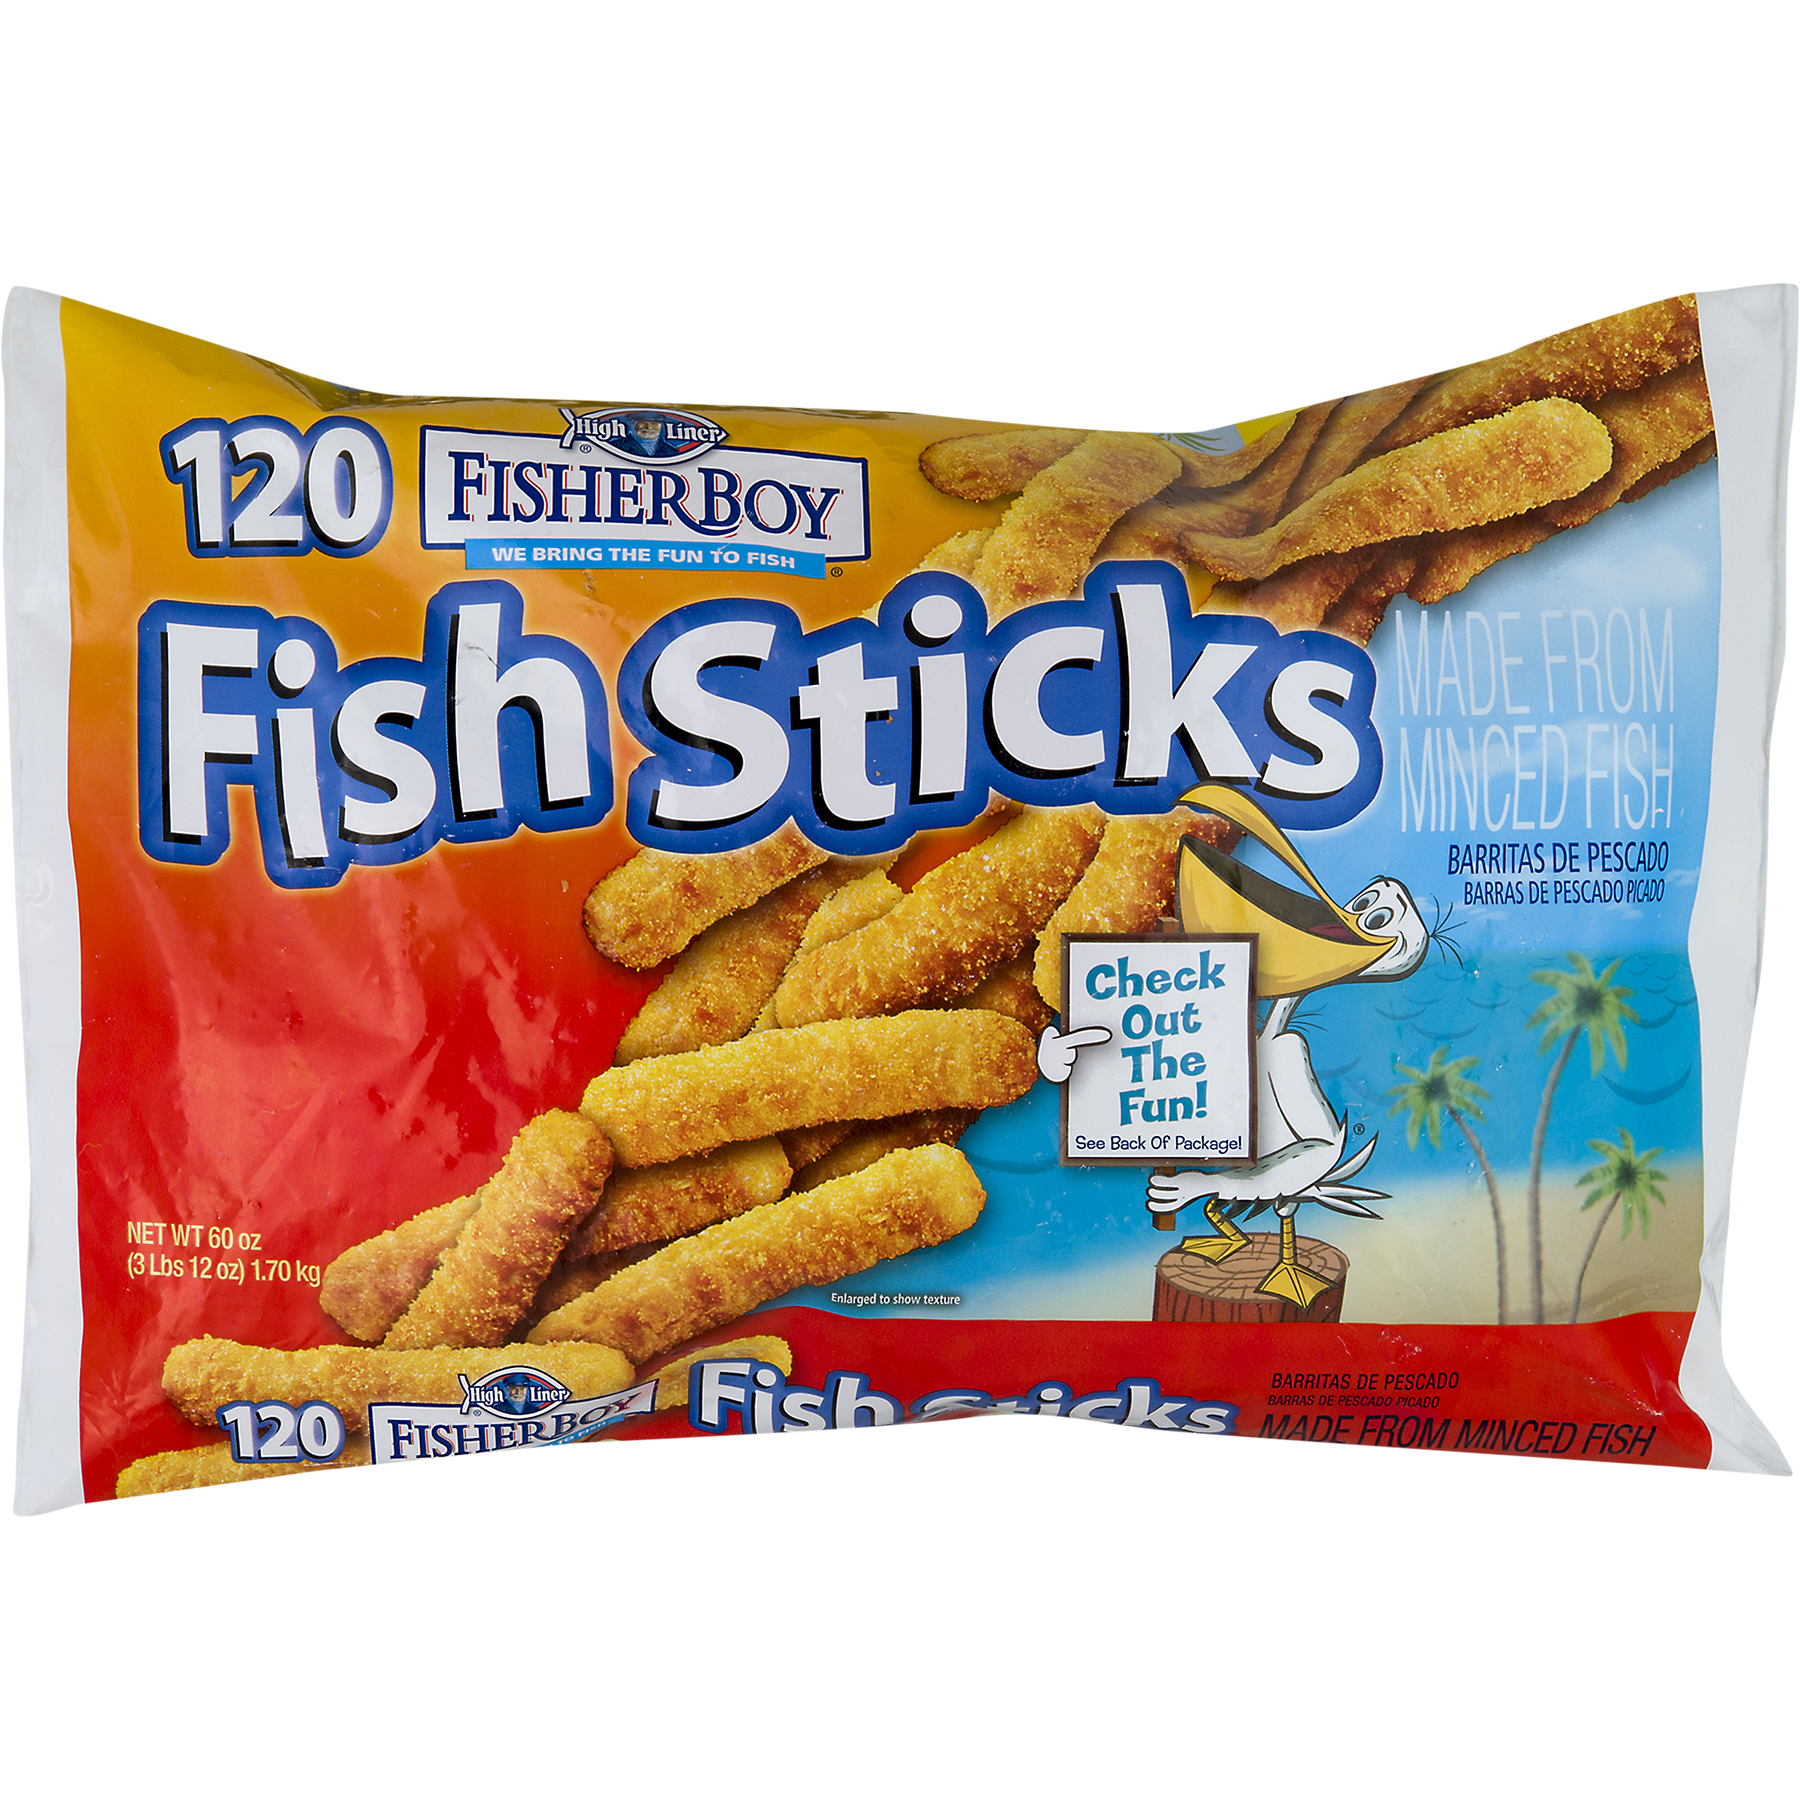 35 Cn Label For Fish Sticks - Labels Database 2020